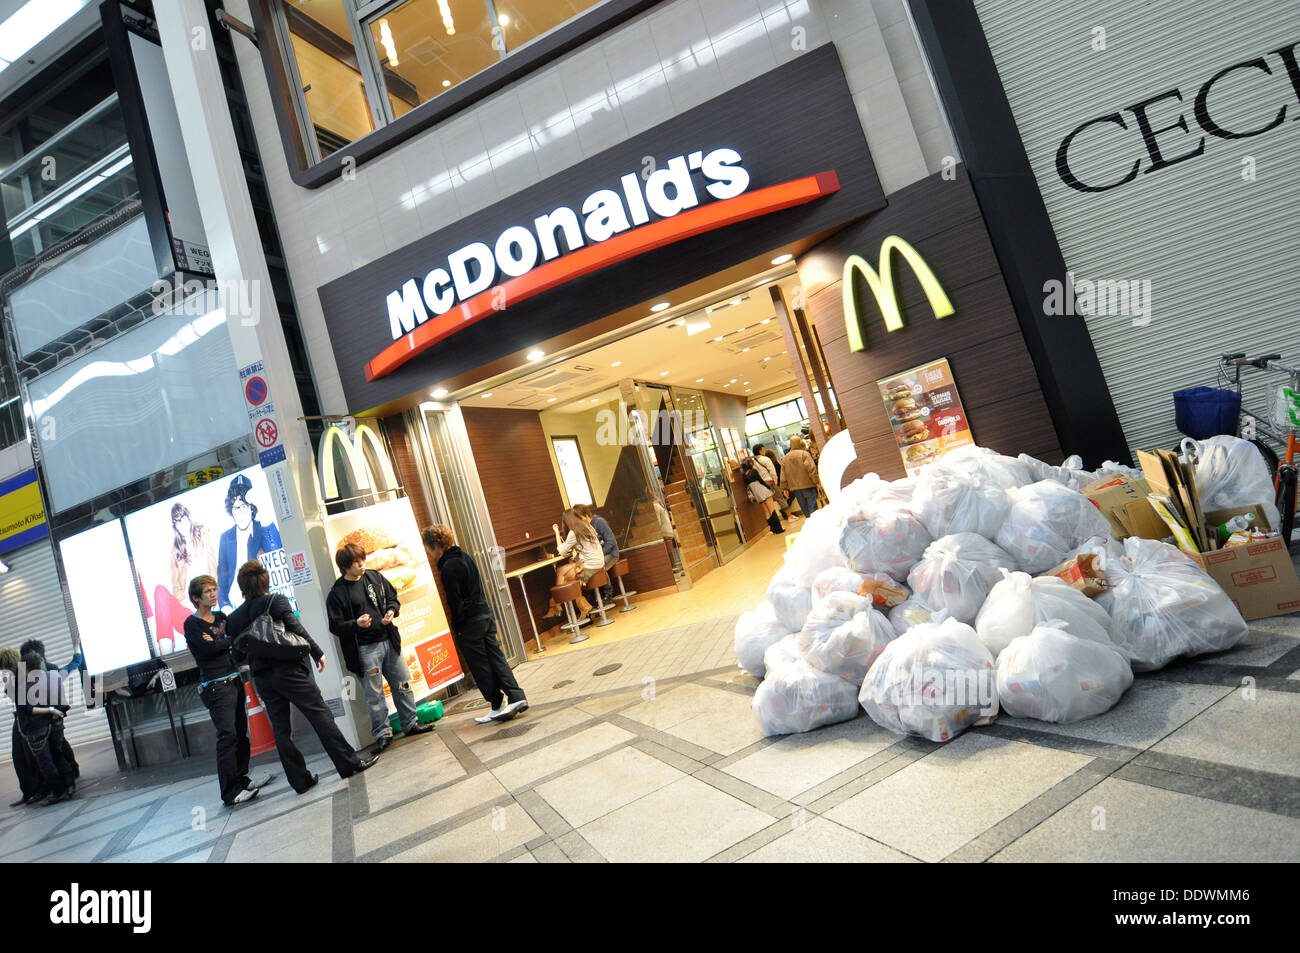 Un McDonald's restaurant fast food avec beaucoup de déchets entassés à l'extérieur. Banque D'Images